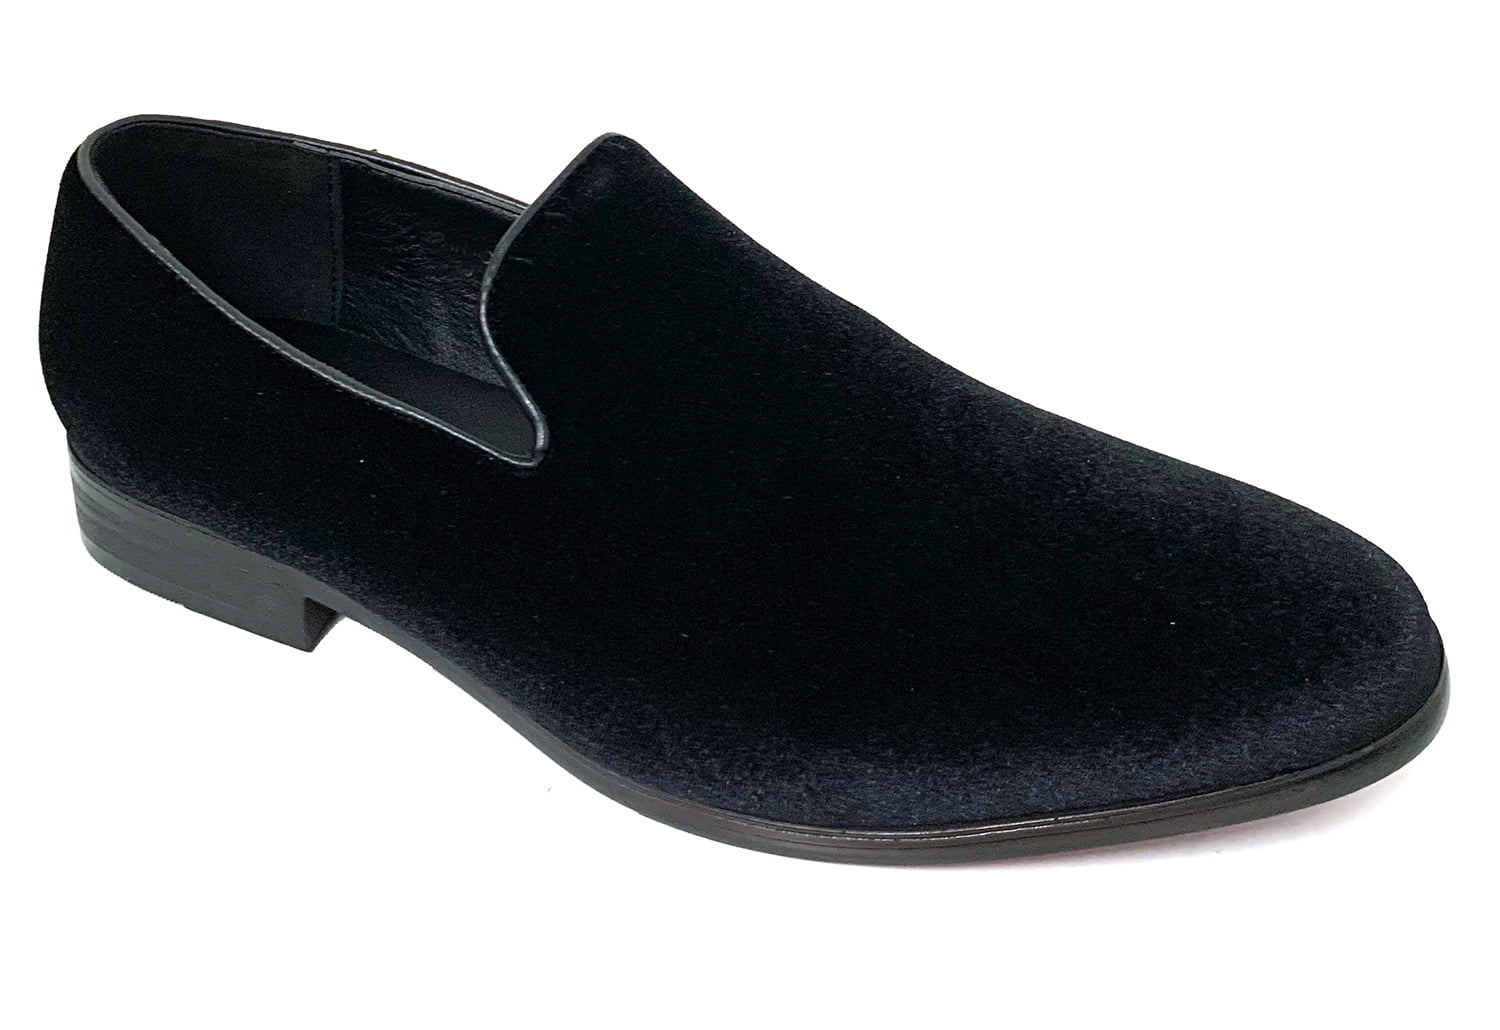 Men's Dress Shoes Velvet Formal Loafer Tuxedo Fashion Slip On - Walmart.com